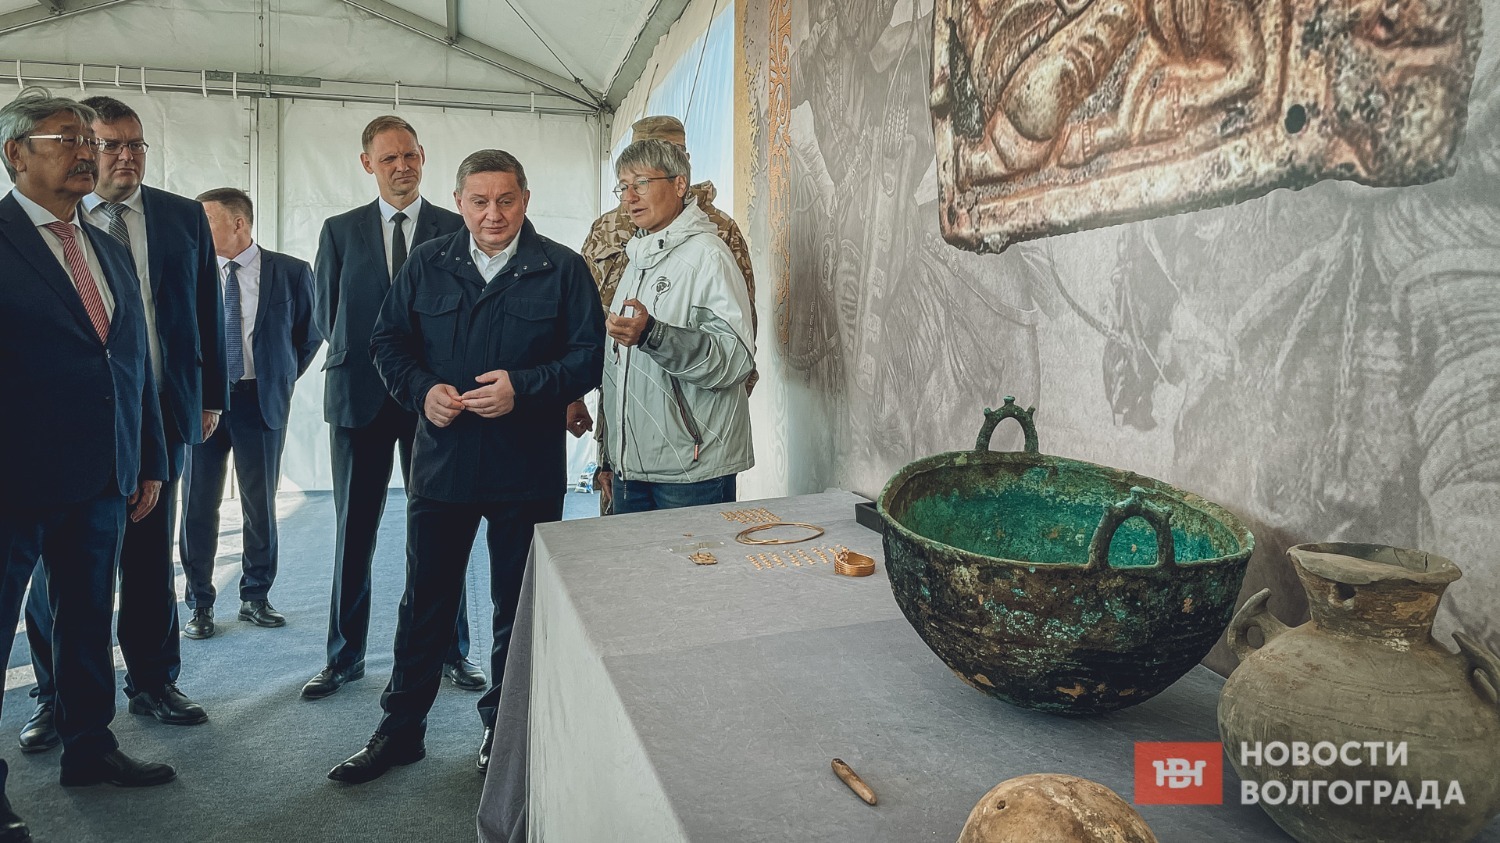 Вдохновленный сарматским золотом губернатор анонсировал создание историко-археологического центра на территории области